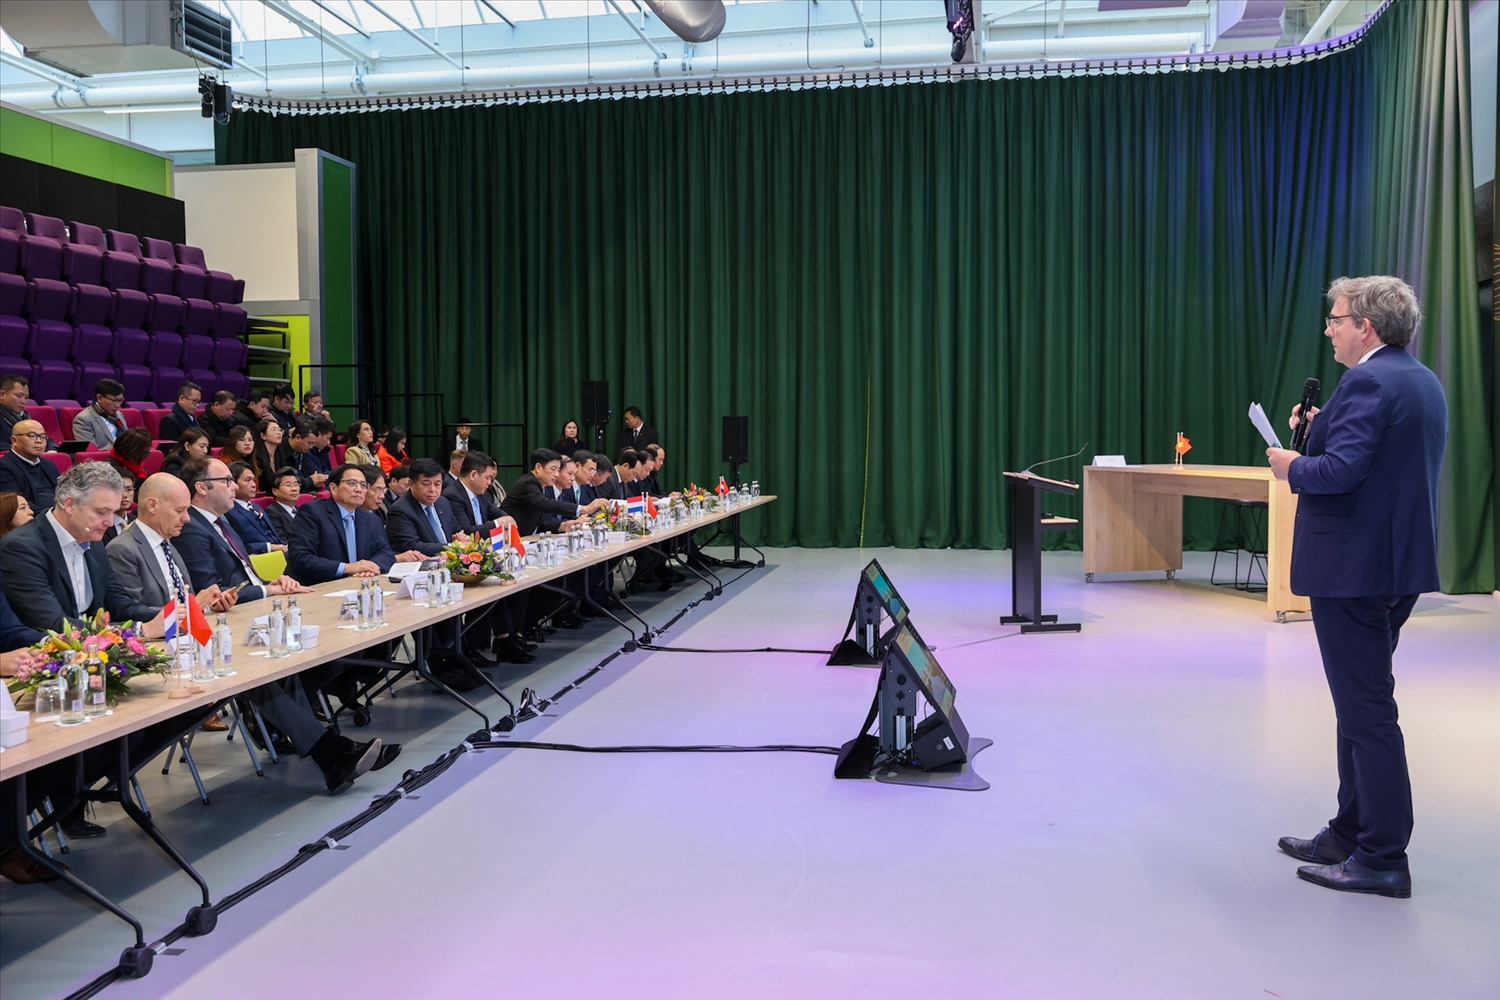 Thủ tướng và thành viên đoàn công tác dự cuộc trao đổi với một số doanh nghiệp Hà Lan về chủ đề "Đổi mới sáng tạo và sản xuất công nghệ cao" - Ảnh: VGP/Nhật Bắc